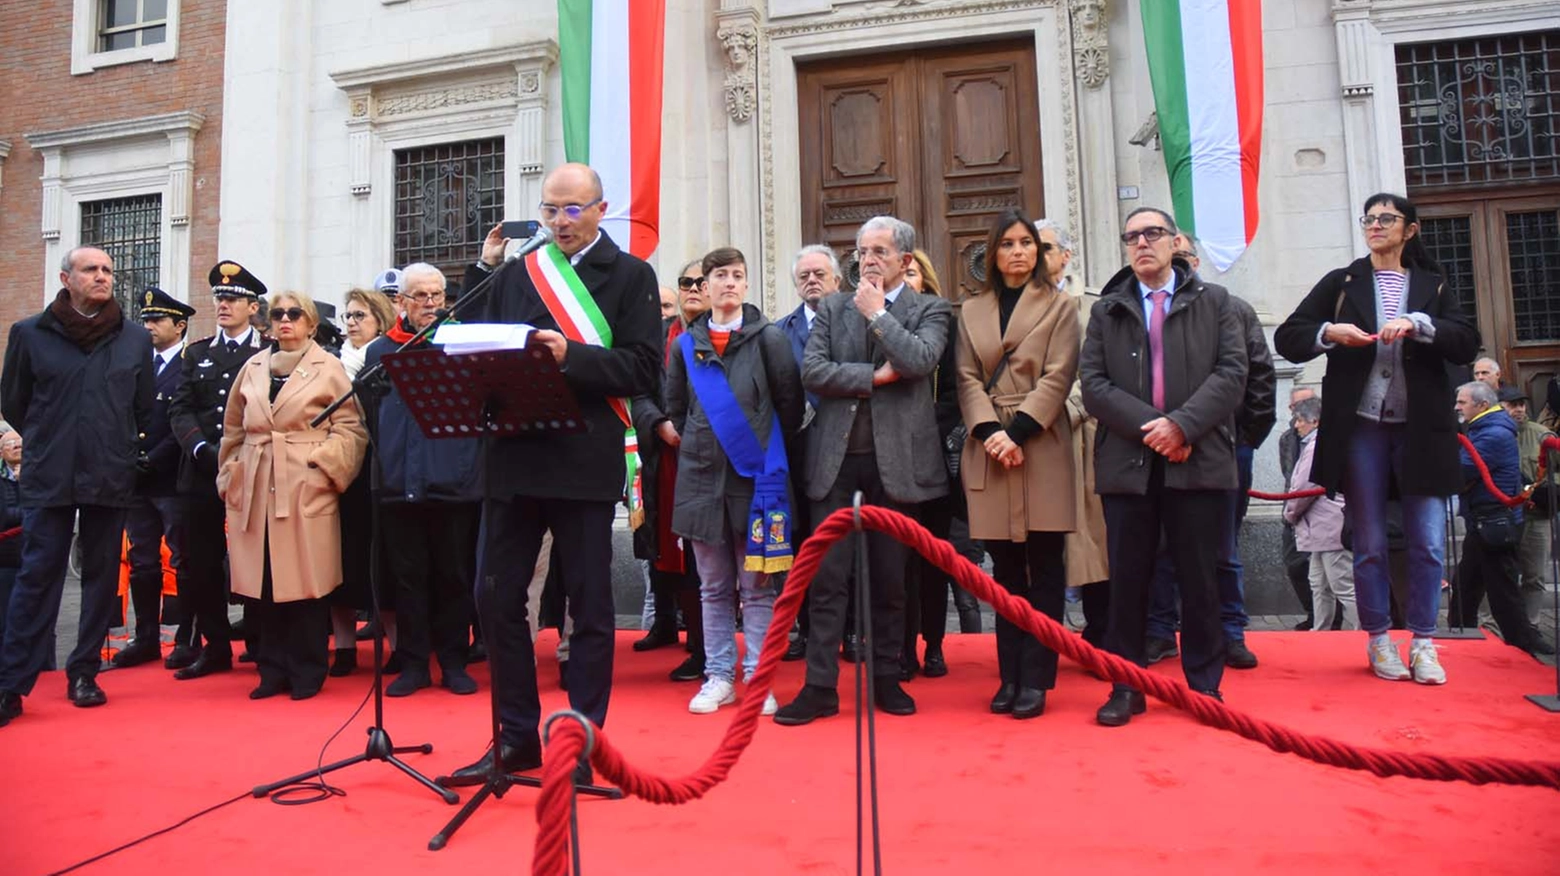 Il sindaco Luca Vecchi durante il discorso sul 25 aprile (foto Artioli)